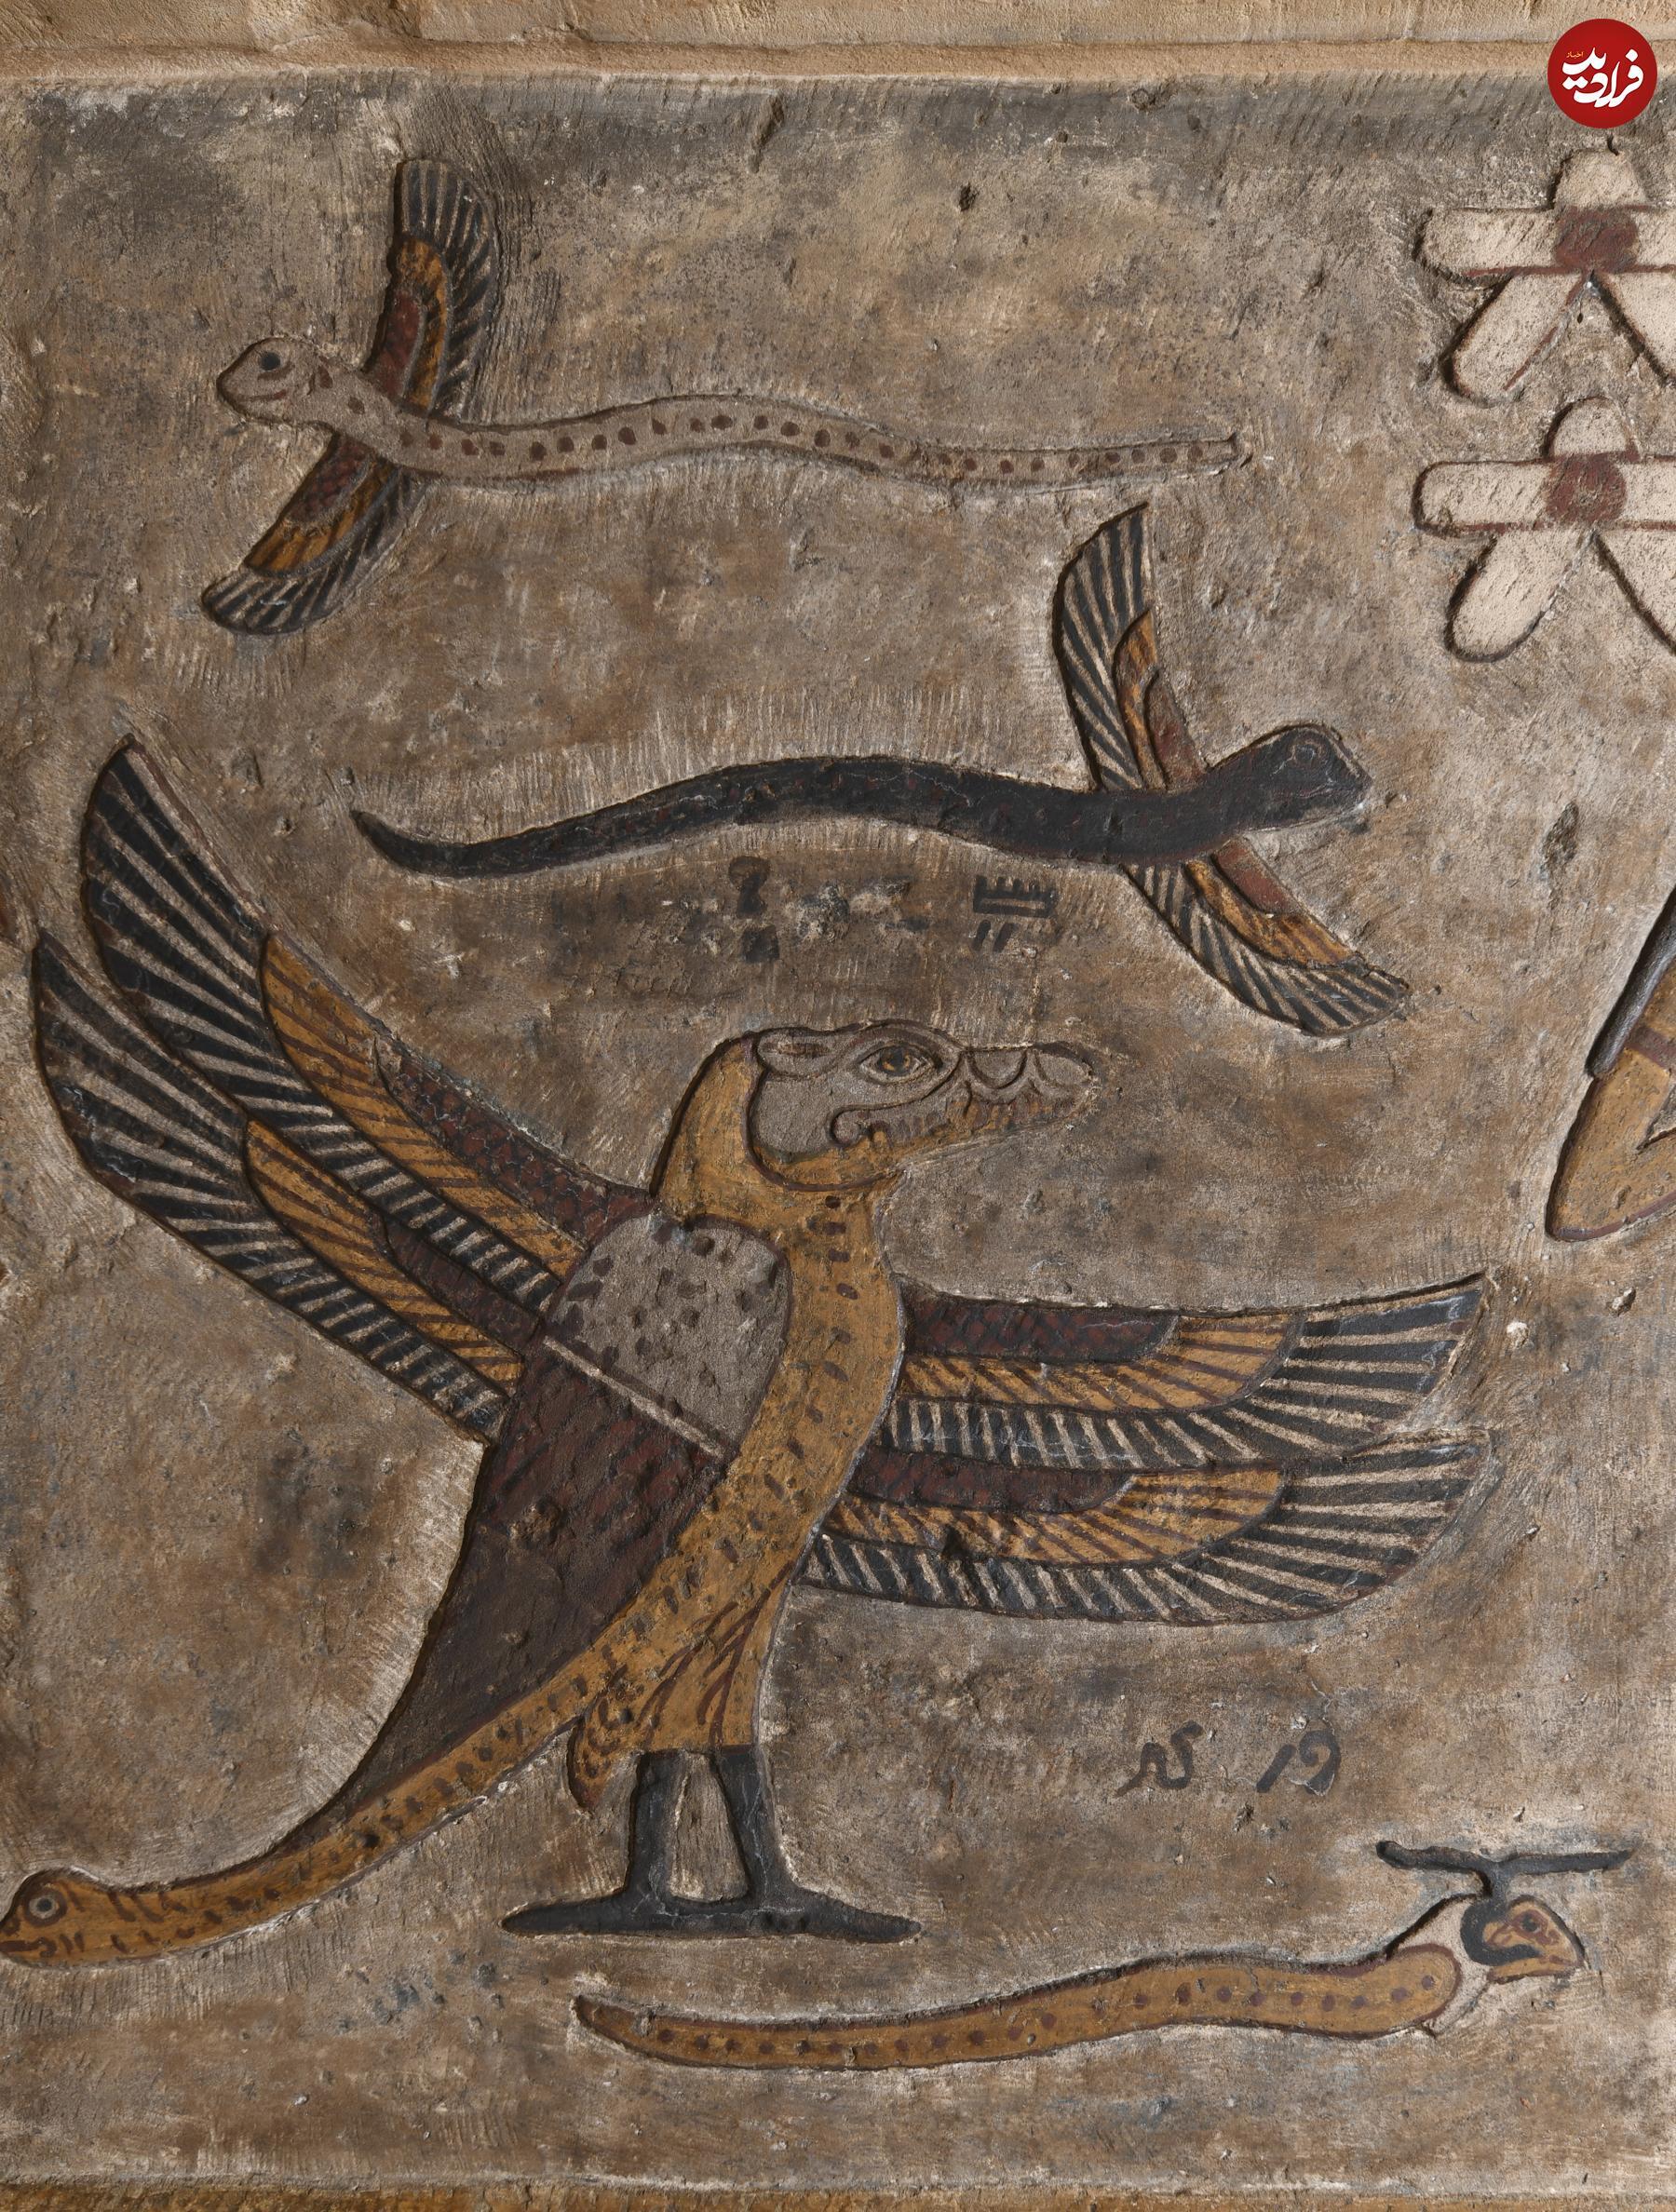 کشف تصاویر شگفت انگیز از صور فلکی در یک معبد مصری